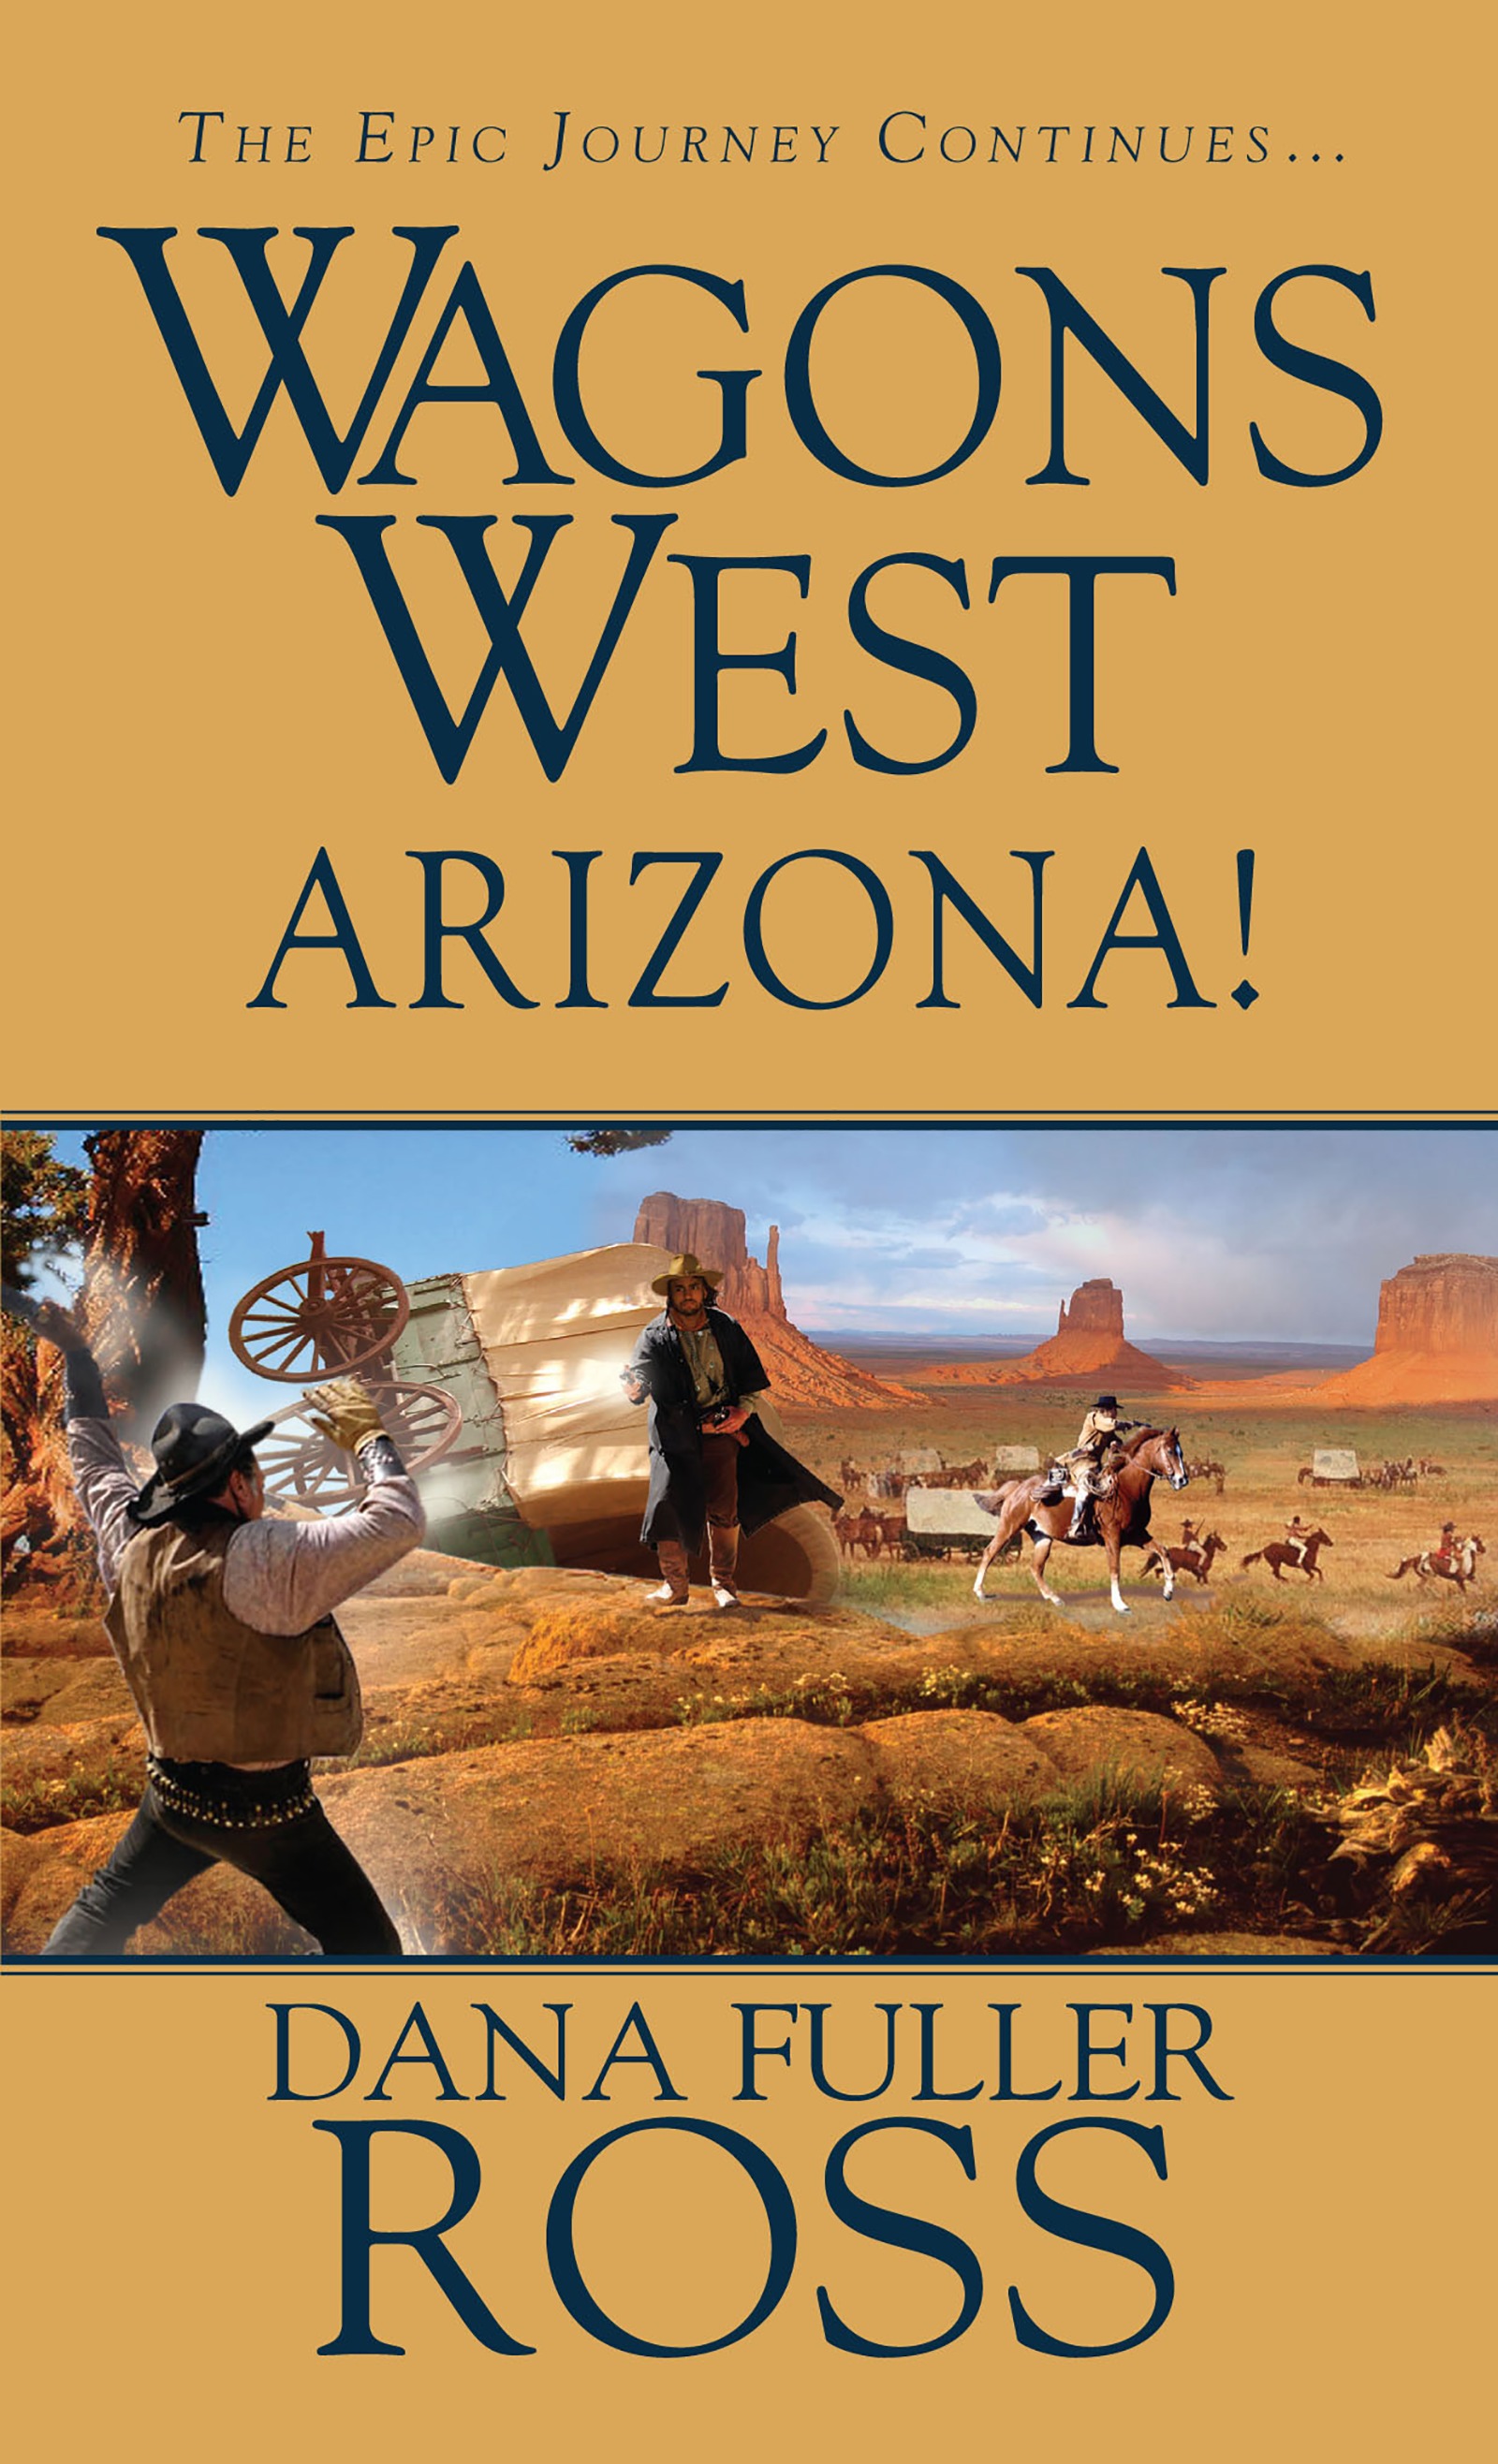 Wagons West: Arizona! - image 1 of 1